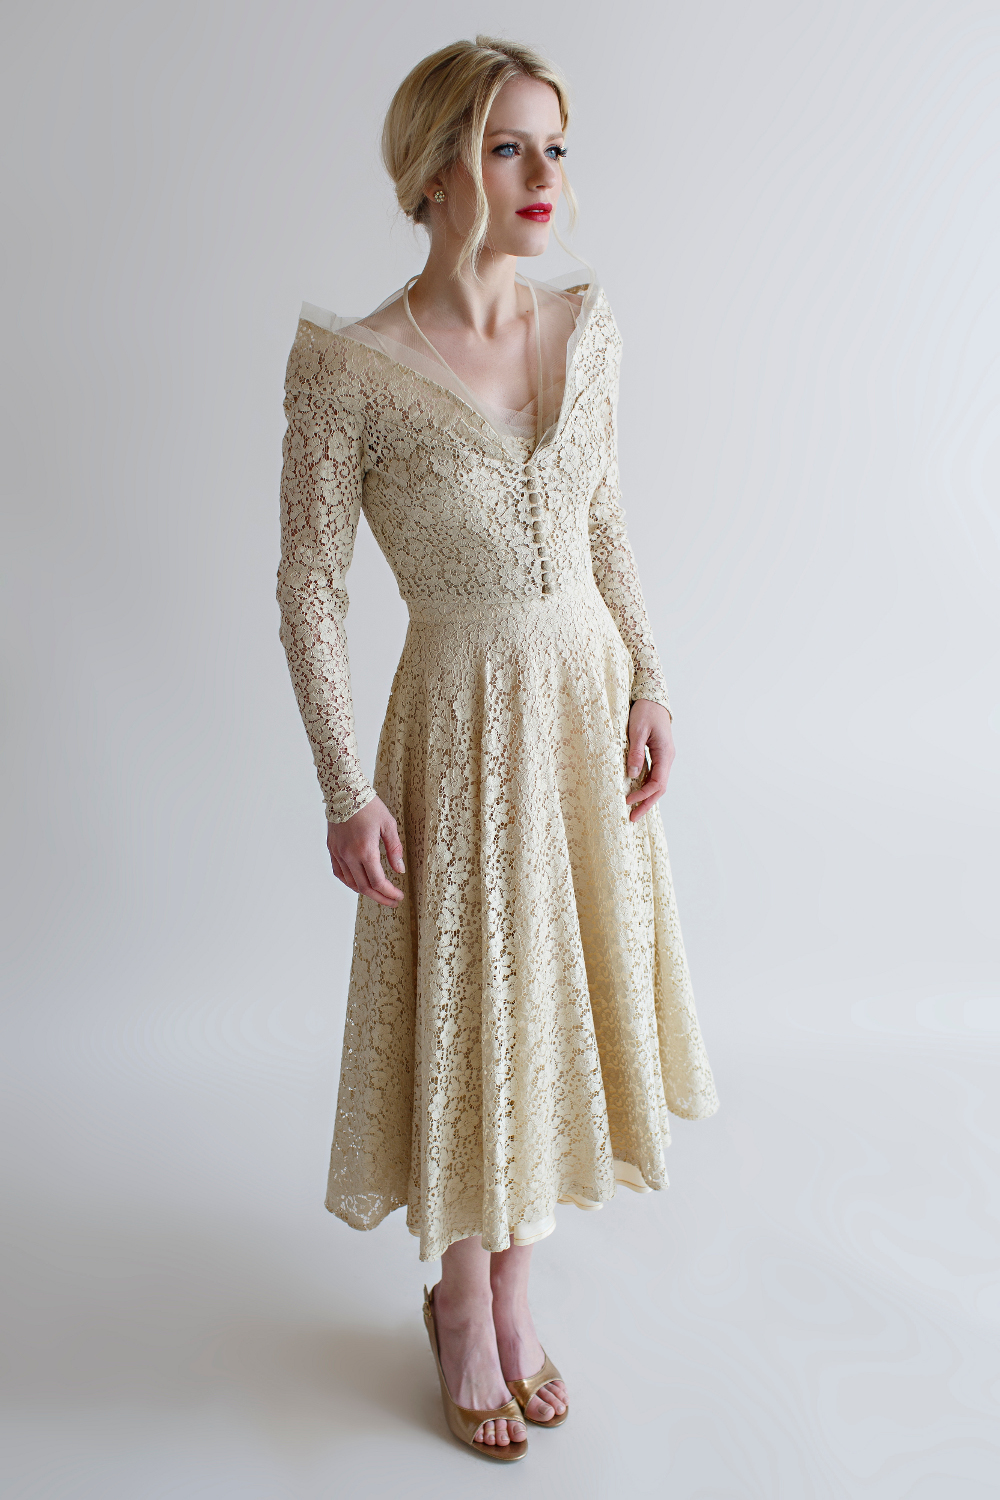 Beloved Vintage Bridal - The Lillian Dress